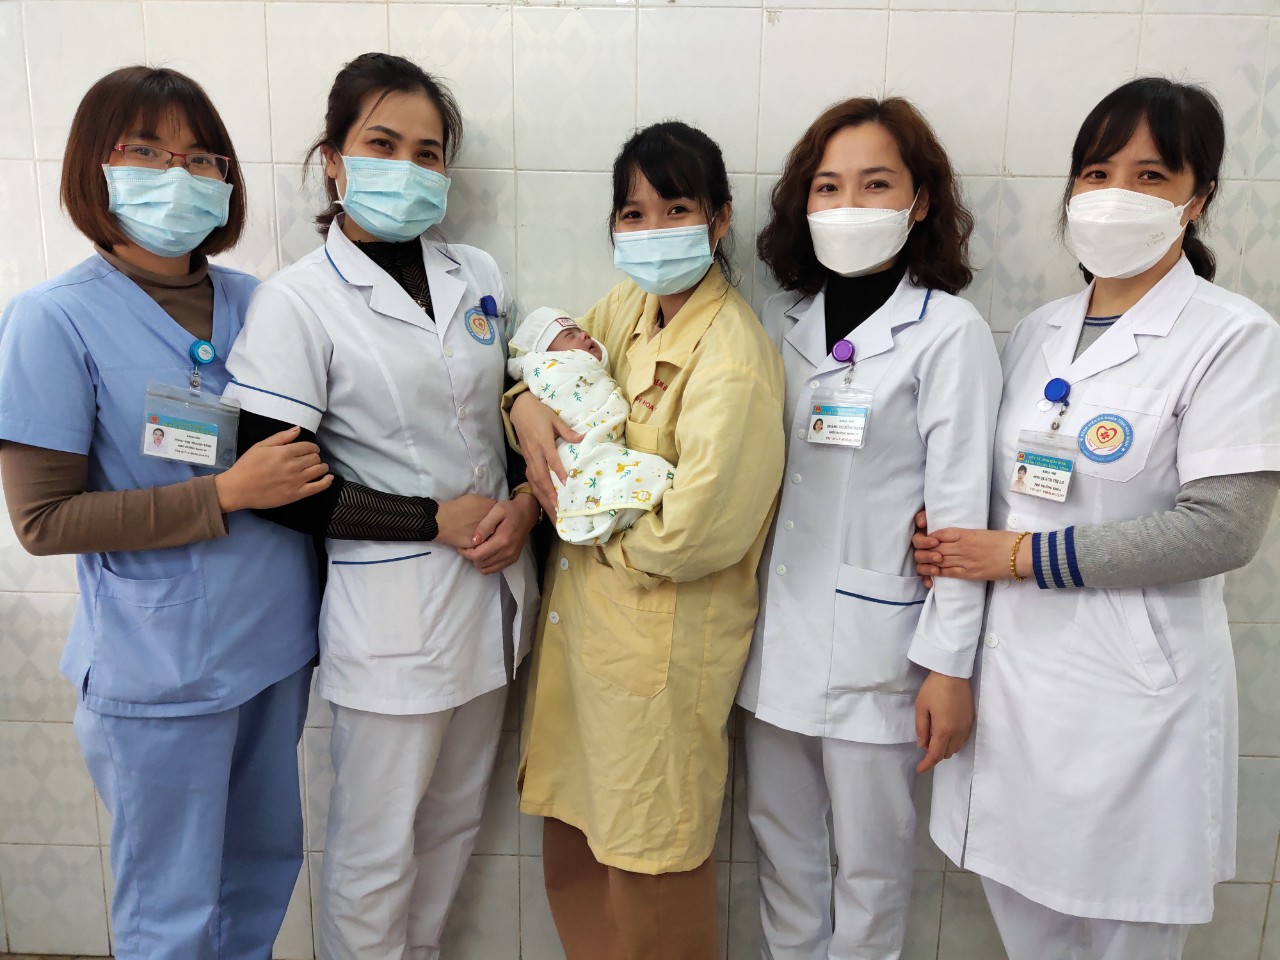 Tình hình khám chữa bệnh tại Bệnh viện Đa khoa tỉnh Hoà Bình trong dịp Tết nguyên đán Nhâm Dần 2022